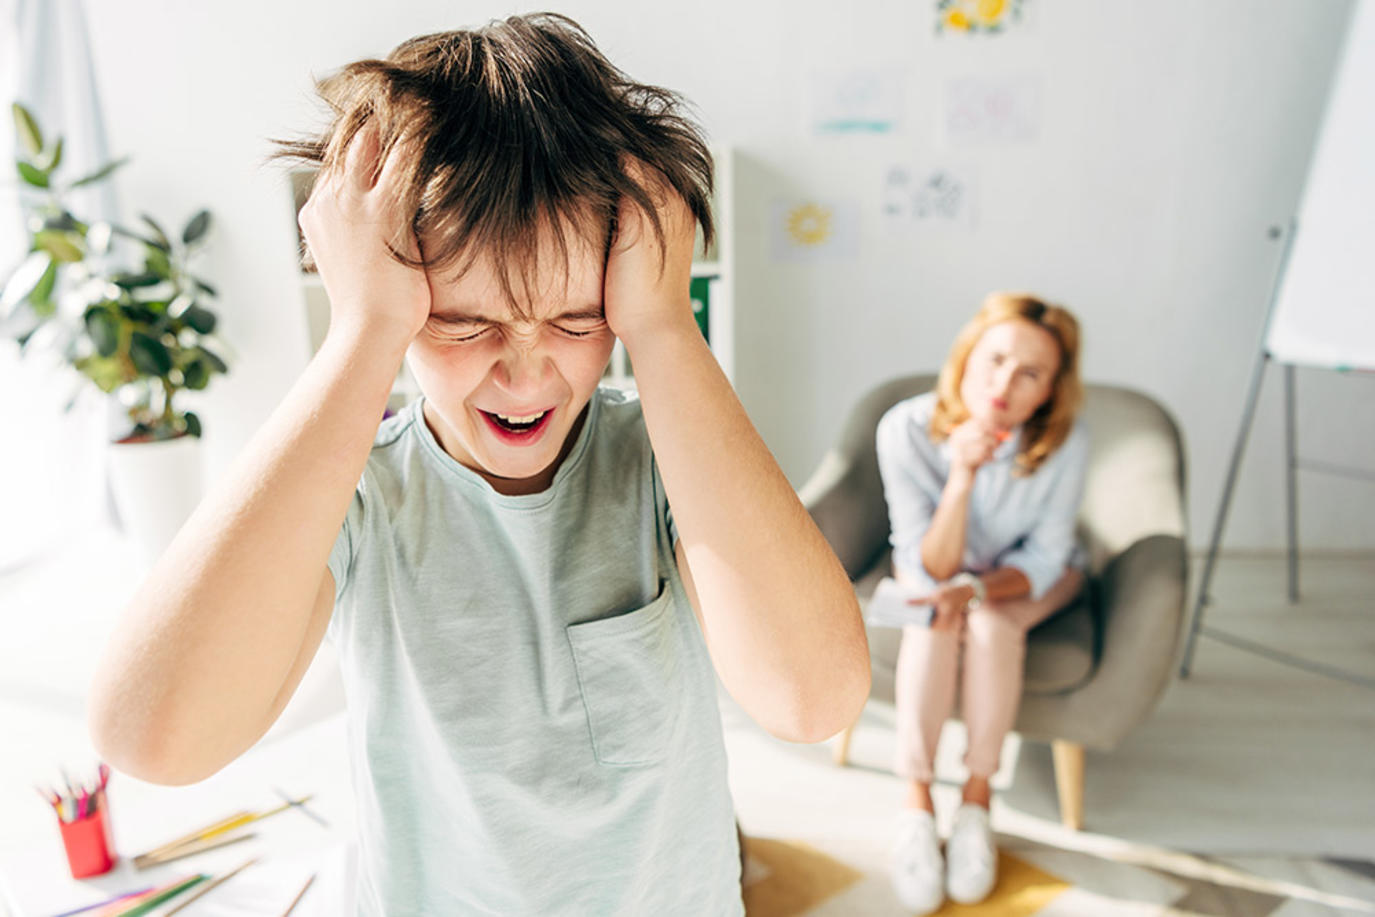 نوبات الغضب عند الاطفال، وكيفية التعامل معها بطريقة سليمة وطرق التحكم بها